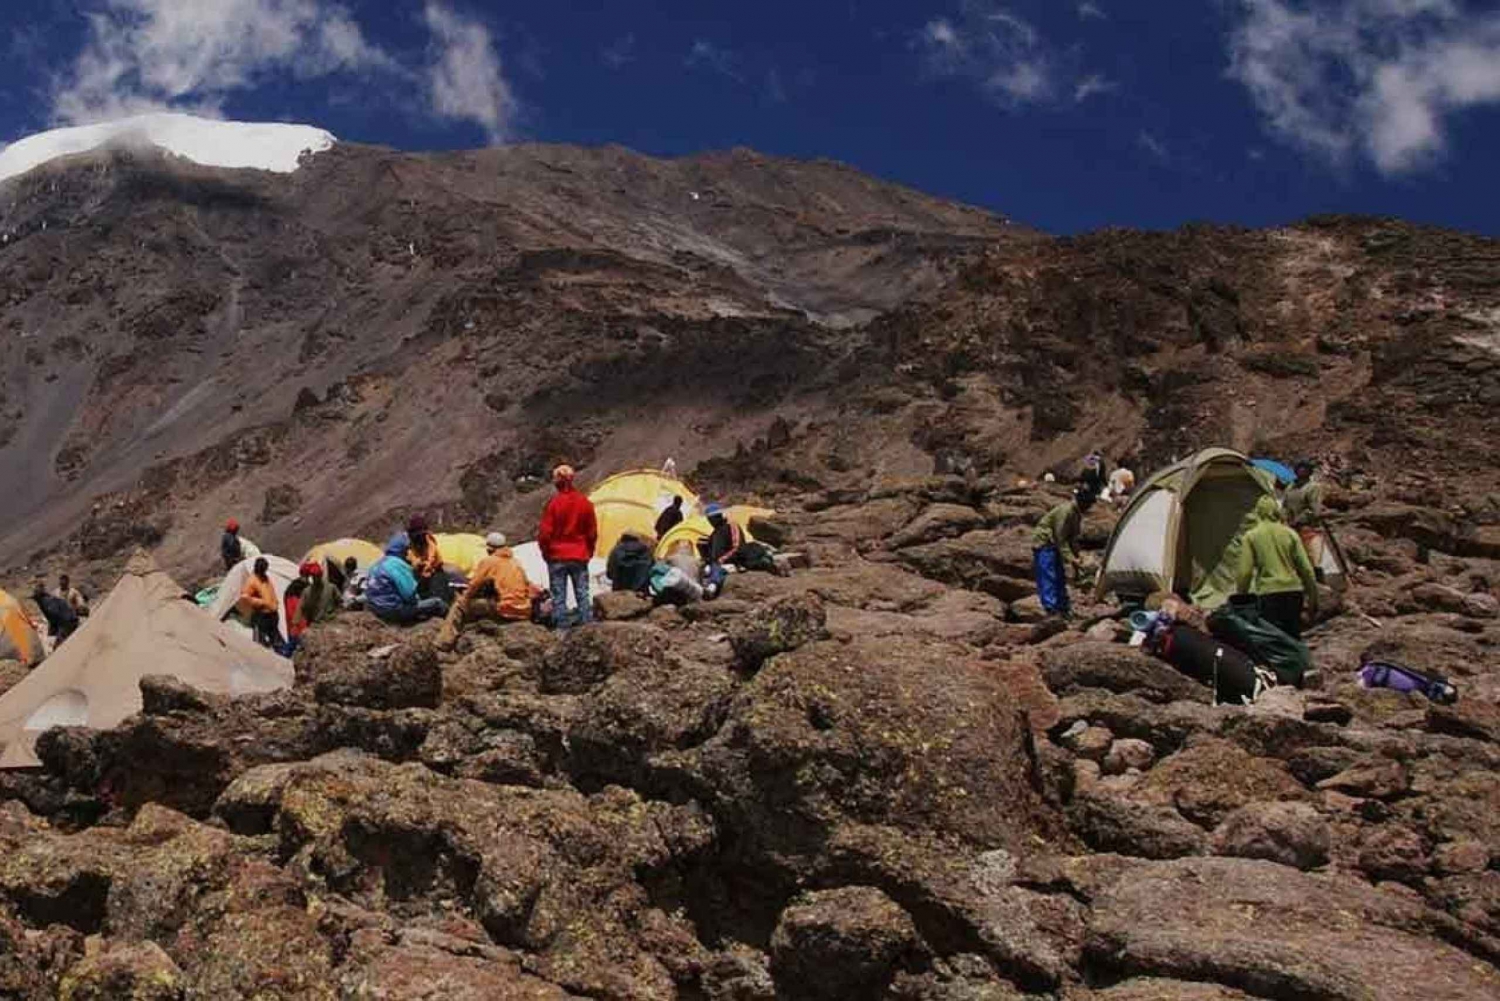 Parco Nazionale del Kilimangiaro - Altopiano di Shira, escursione di un giorno